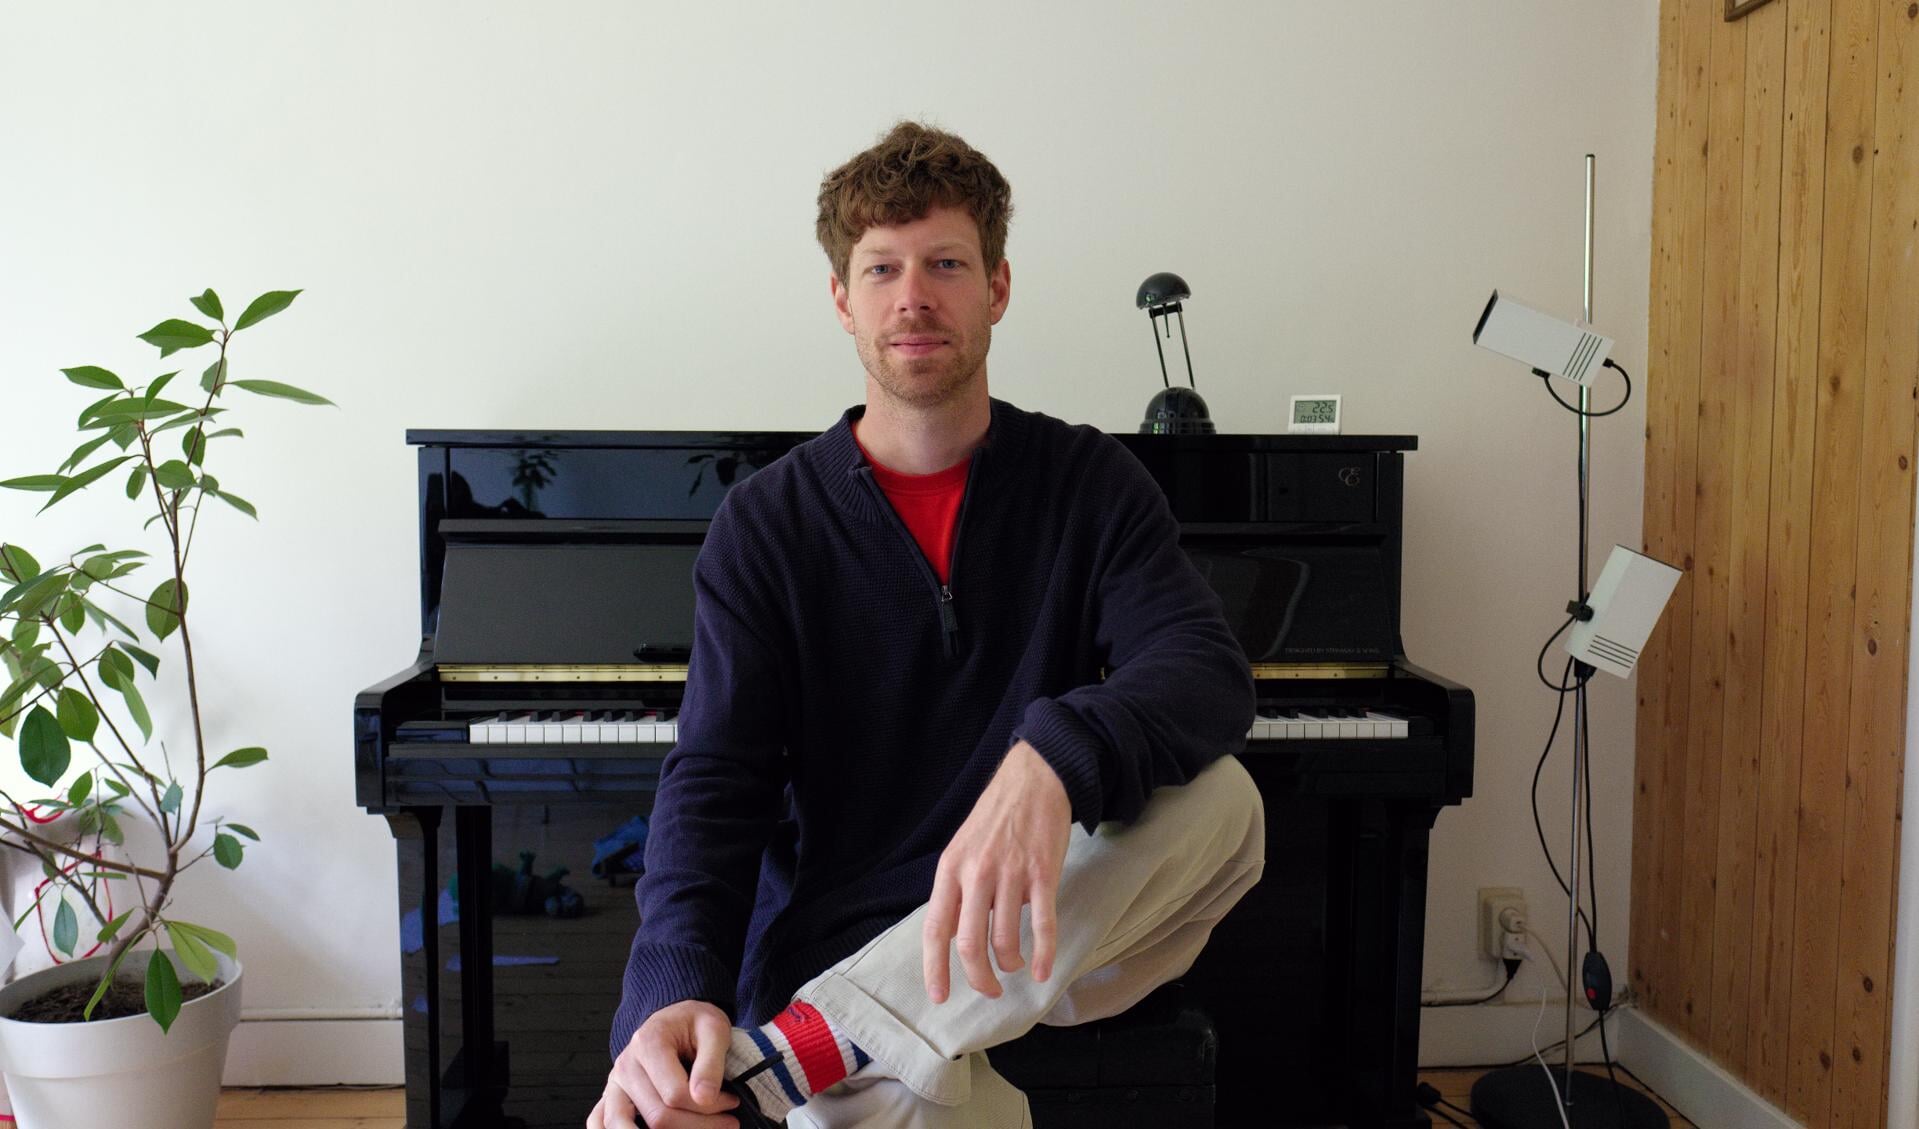 Thierry Castel, de nieuwe pianodocent bij CultuurLocaal (foto Thierry Castel)